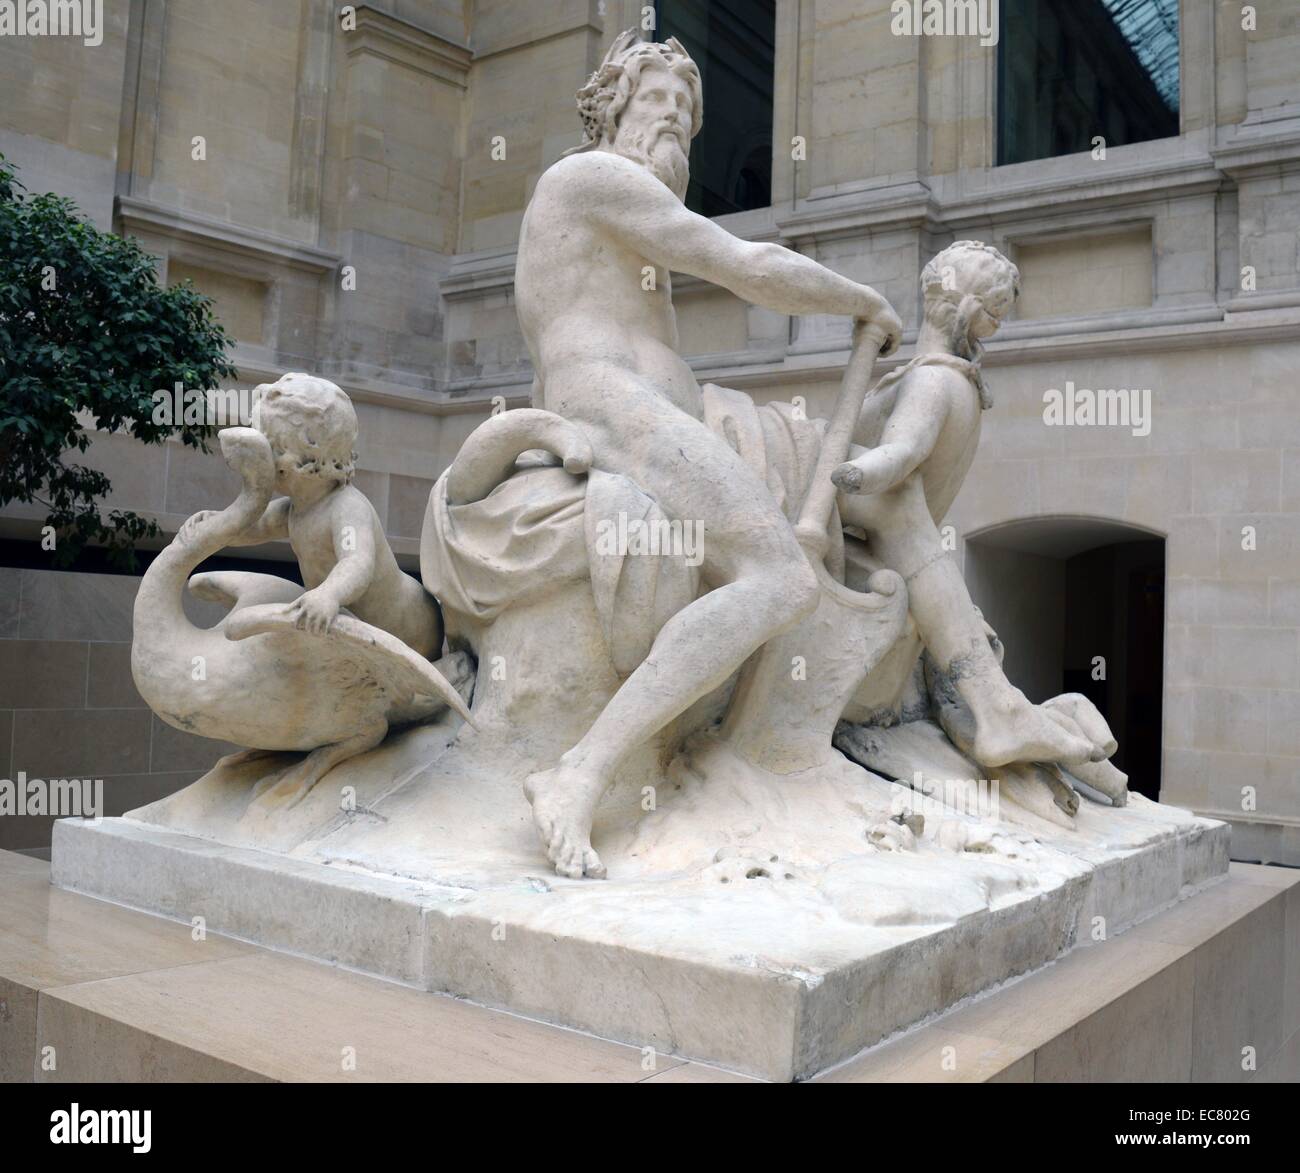 Marmorstatue der Seine und Marne von Nicolas Coustou (1658-1733), französischer Bildhauer, dessen Stil auf die akademischen Grand Manier der Bildhauer basierte. Vom 17. Jahrhundert. Stockfoto